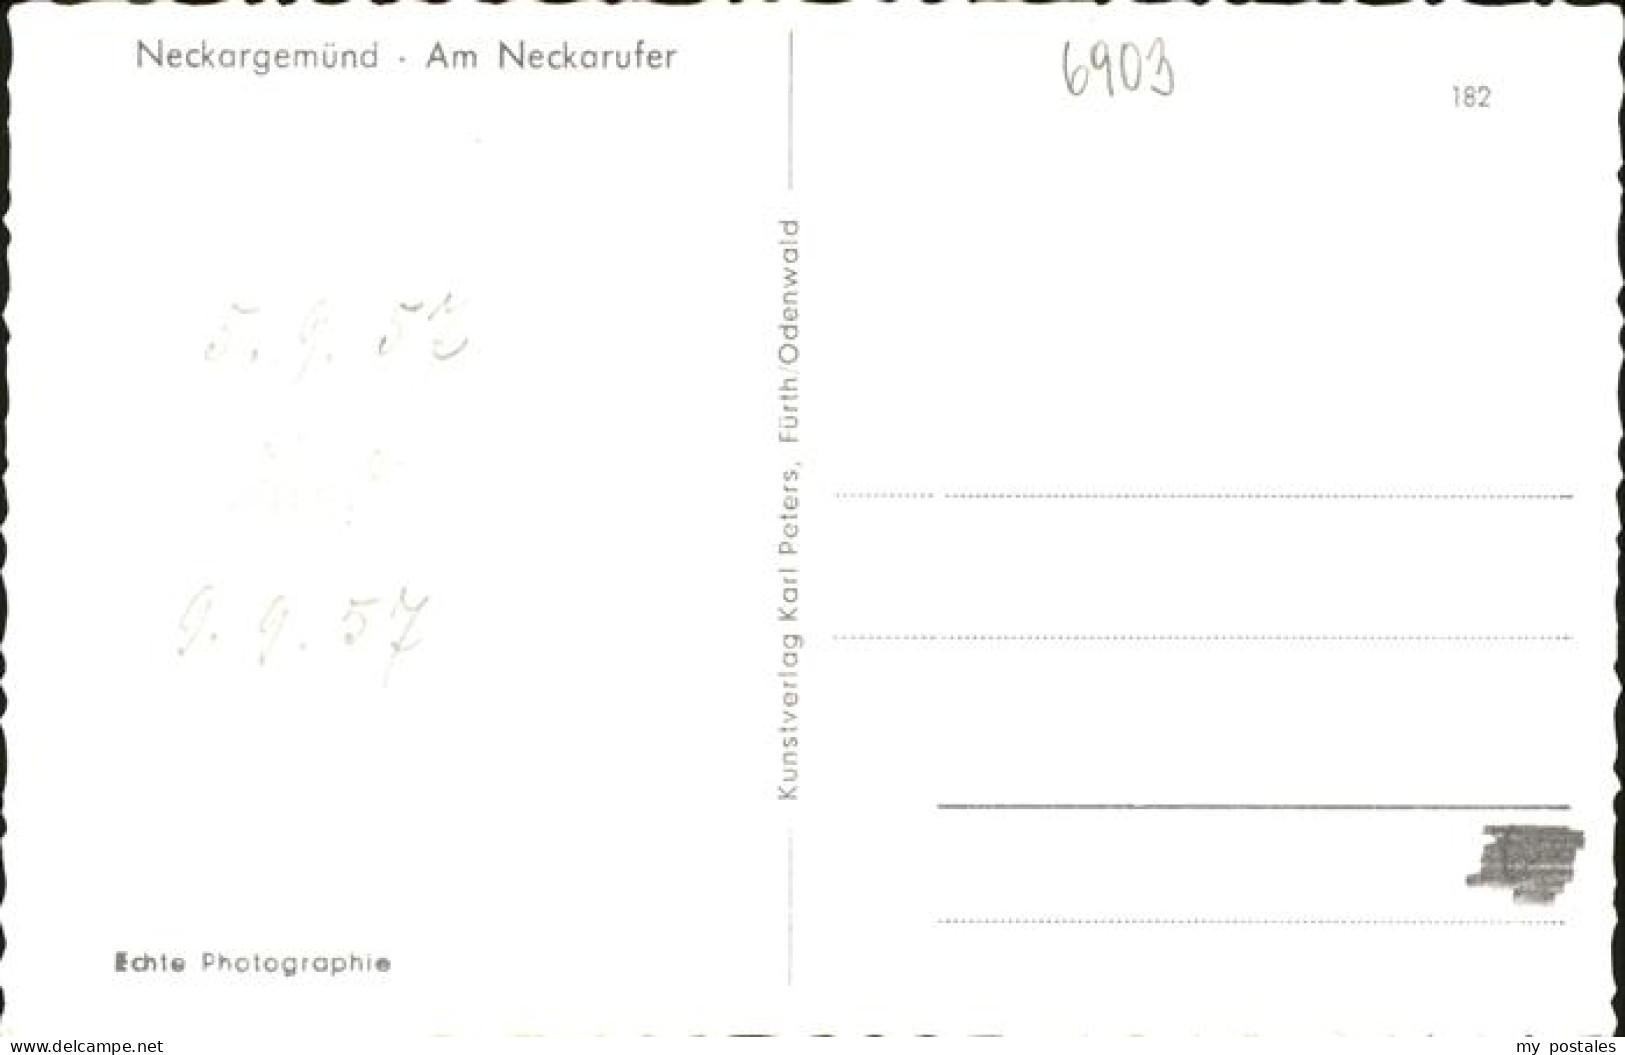 41258370 Neckargemuend Neckarufer Neckargemuend - Neckargemünd